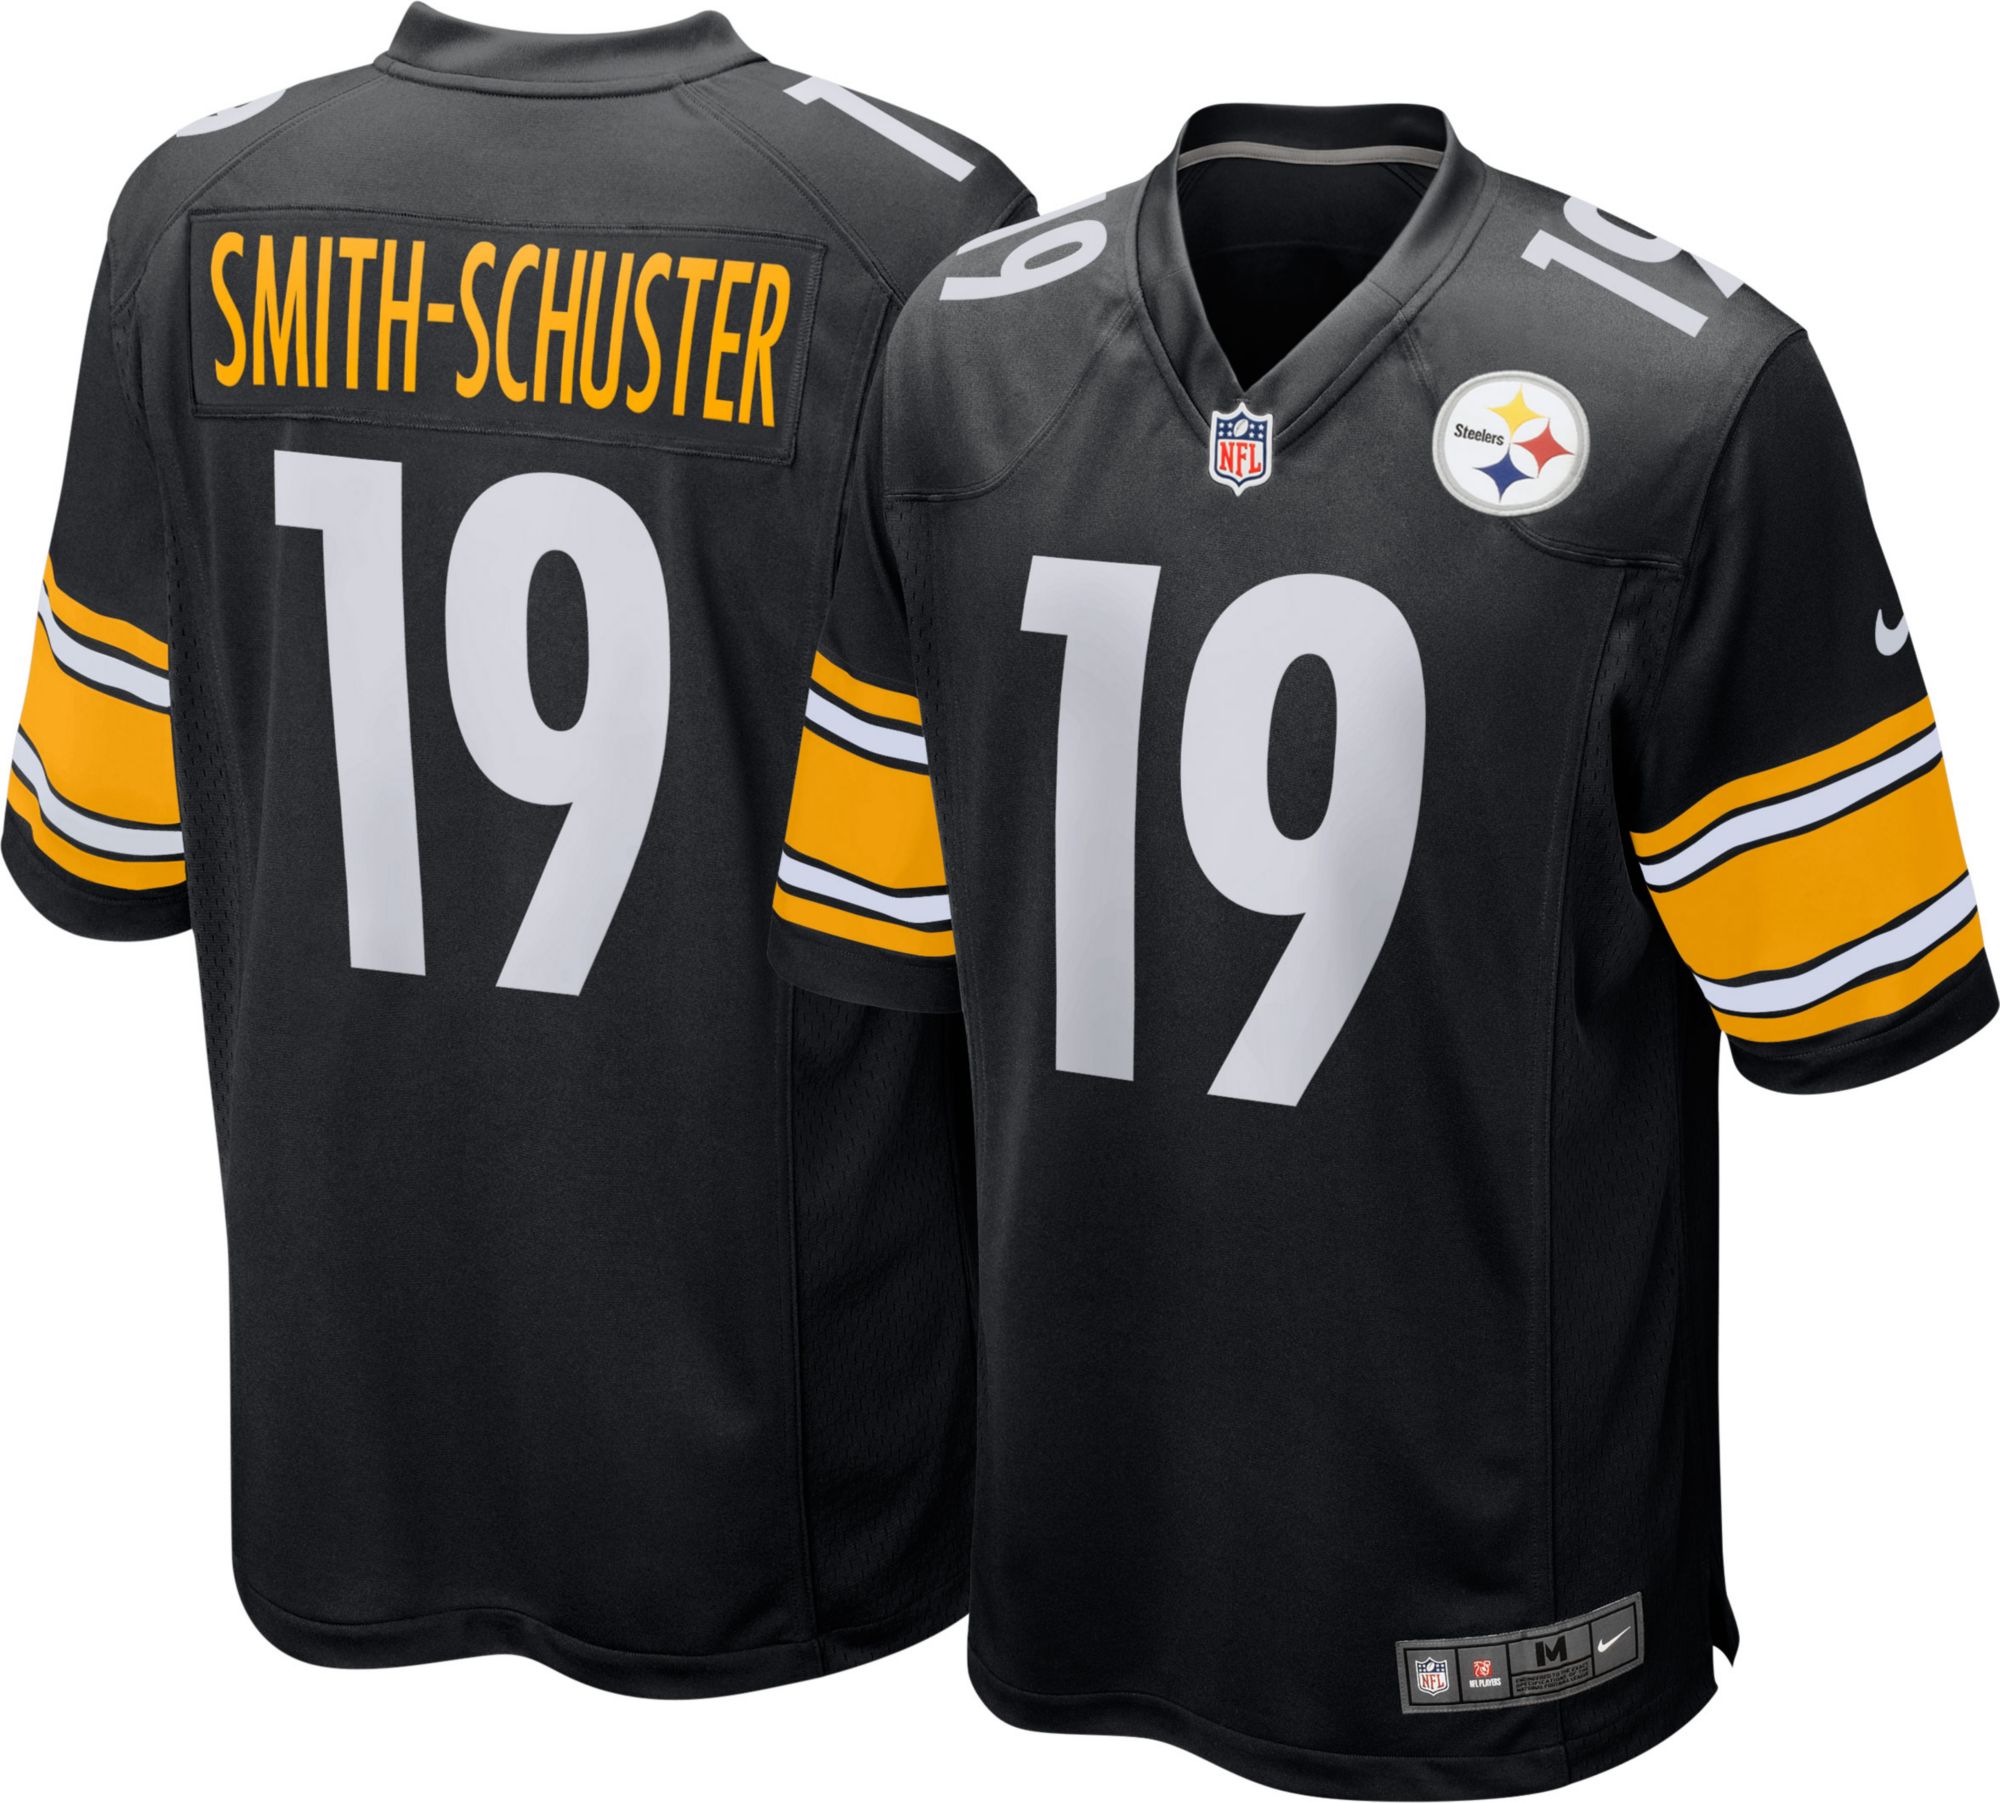 Steelers Jerseys | Curbside Pickup 